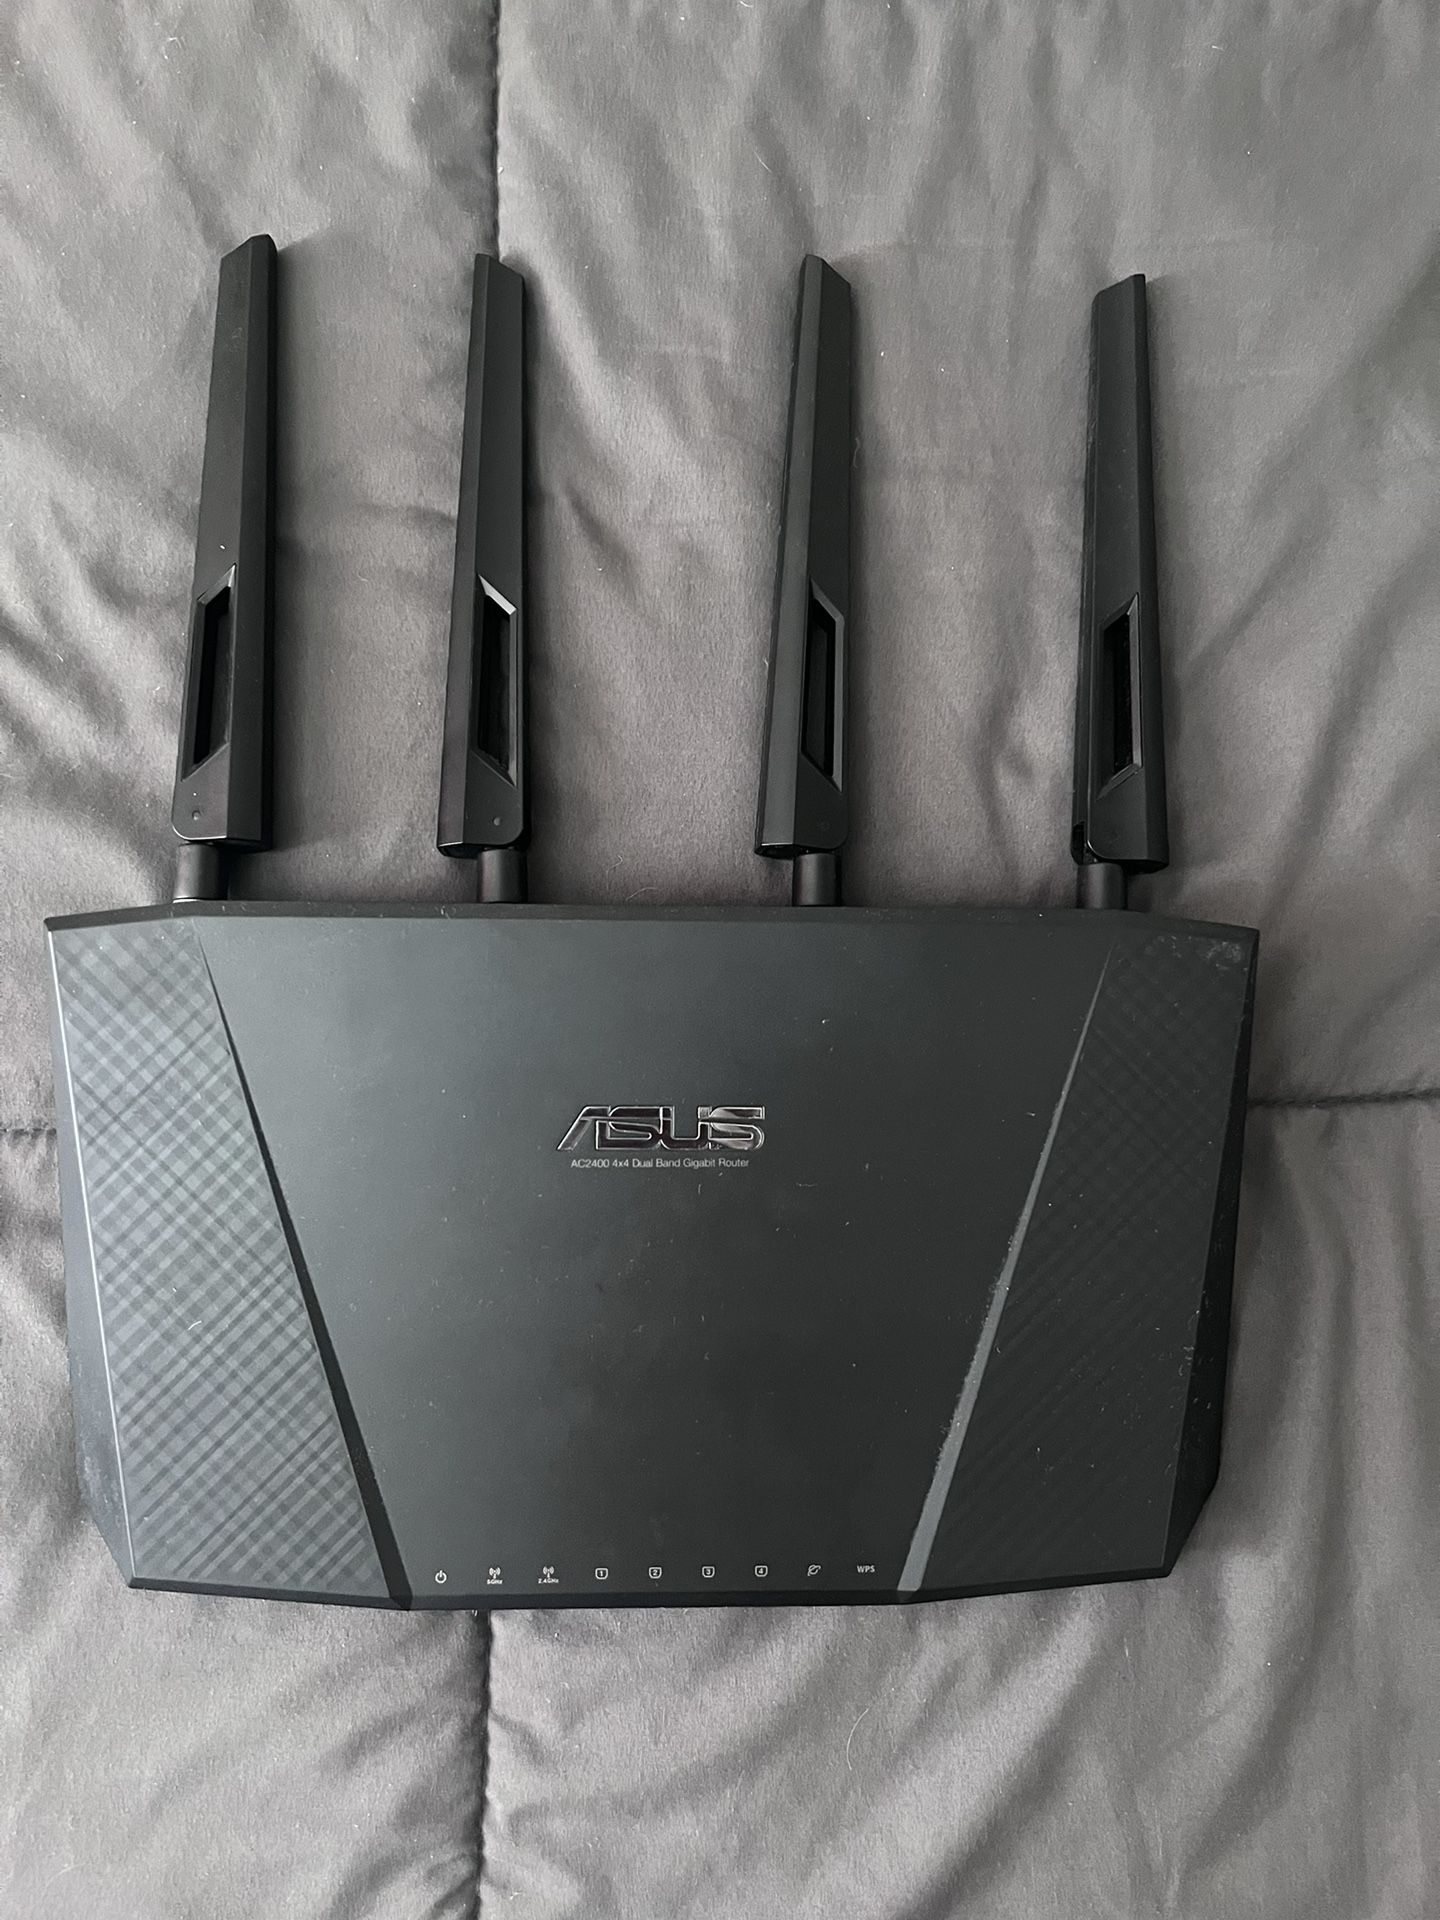 ASUS AC2400 Gigabit router